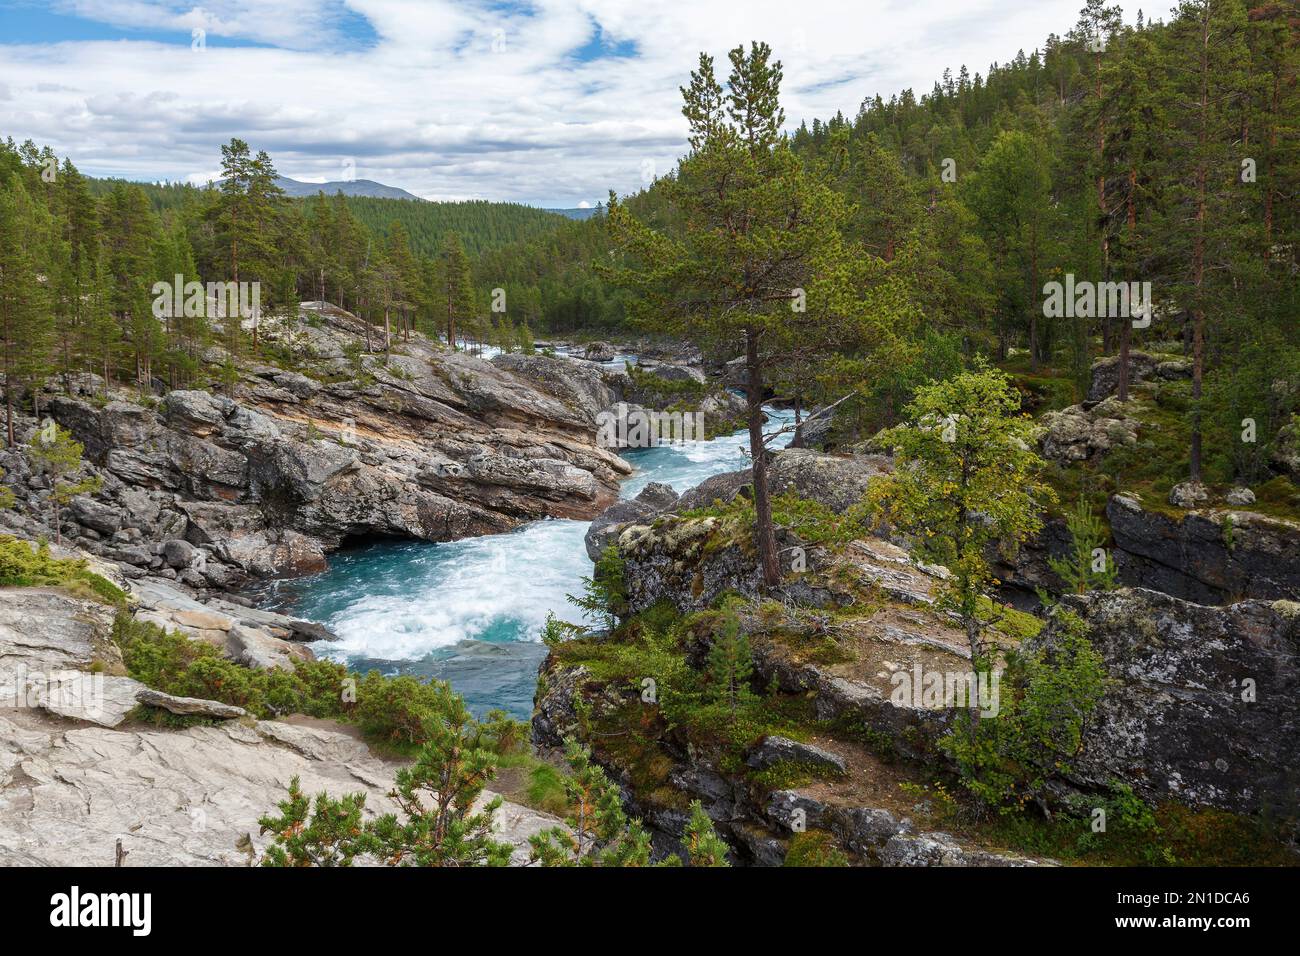 Der Fluss vom Wasserfall Likholefossen in der Gemeinde Gaular, Norwegen Banque D'Images